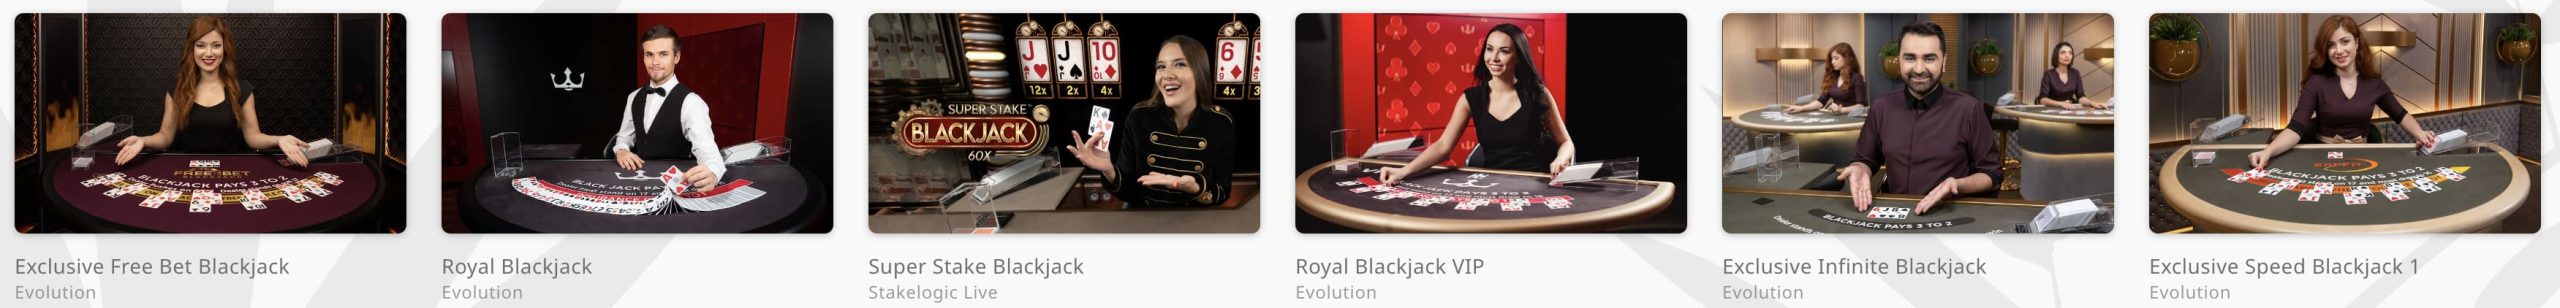 Blackjack Games in Royal Panda Casino 